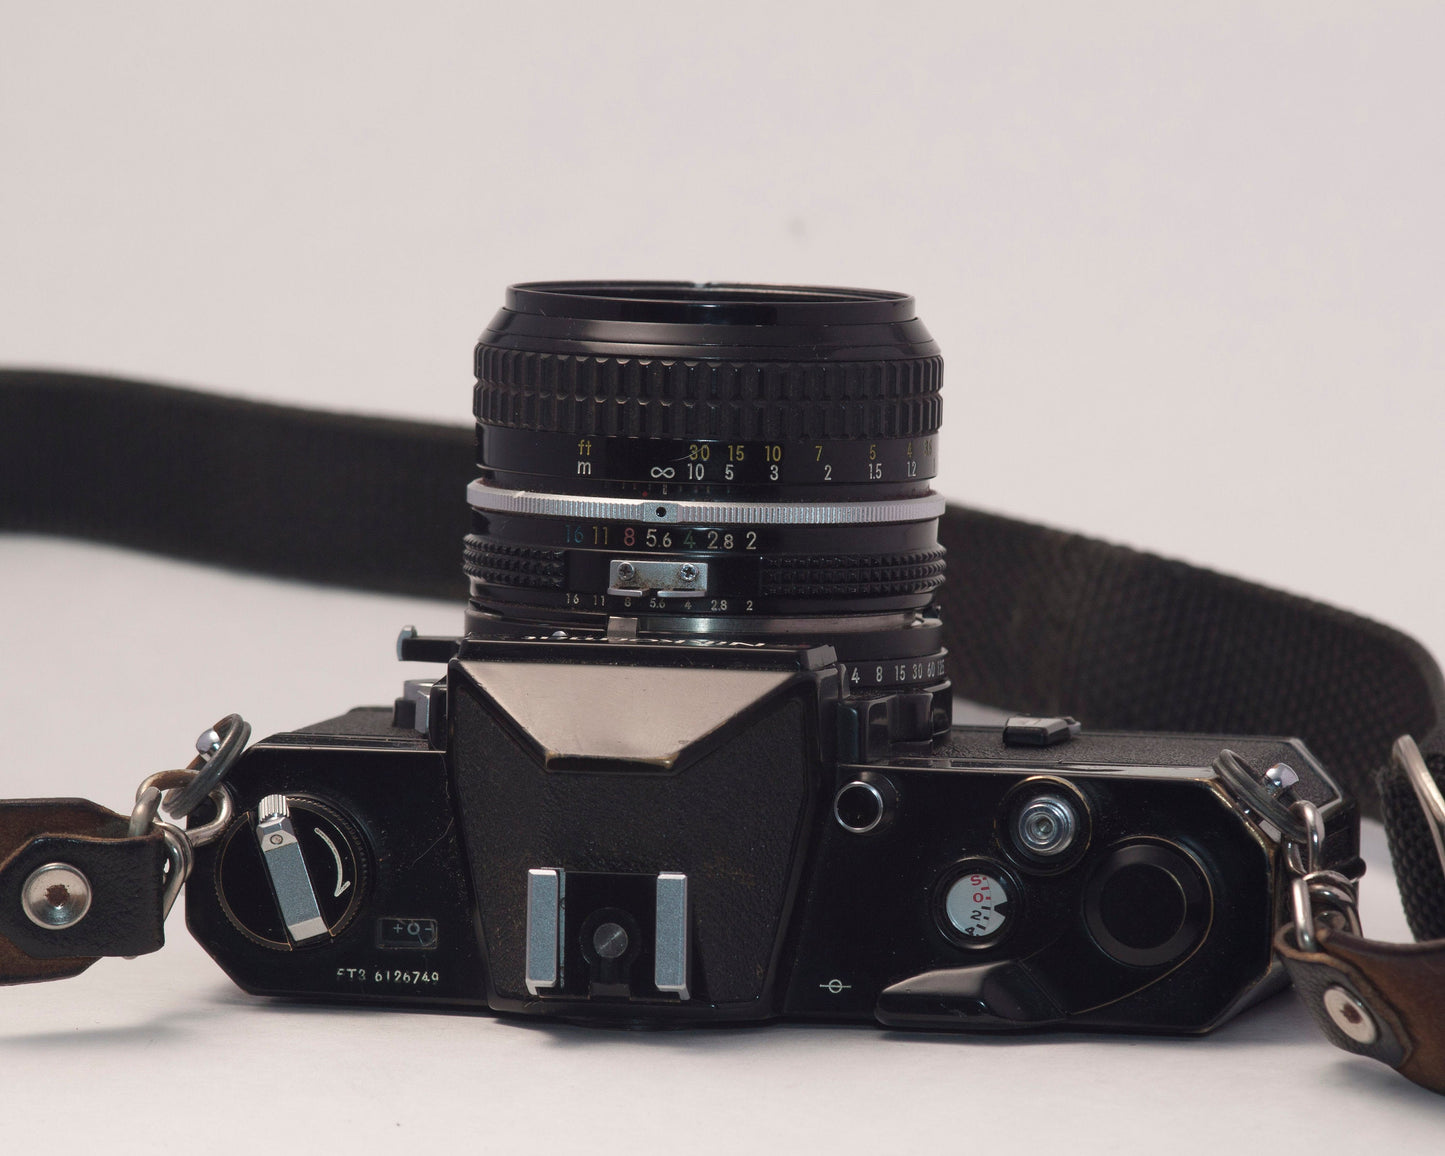 Nikkormat FT3 35mm film SLR + Nikon 50mm f2 lens